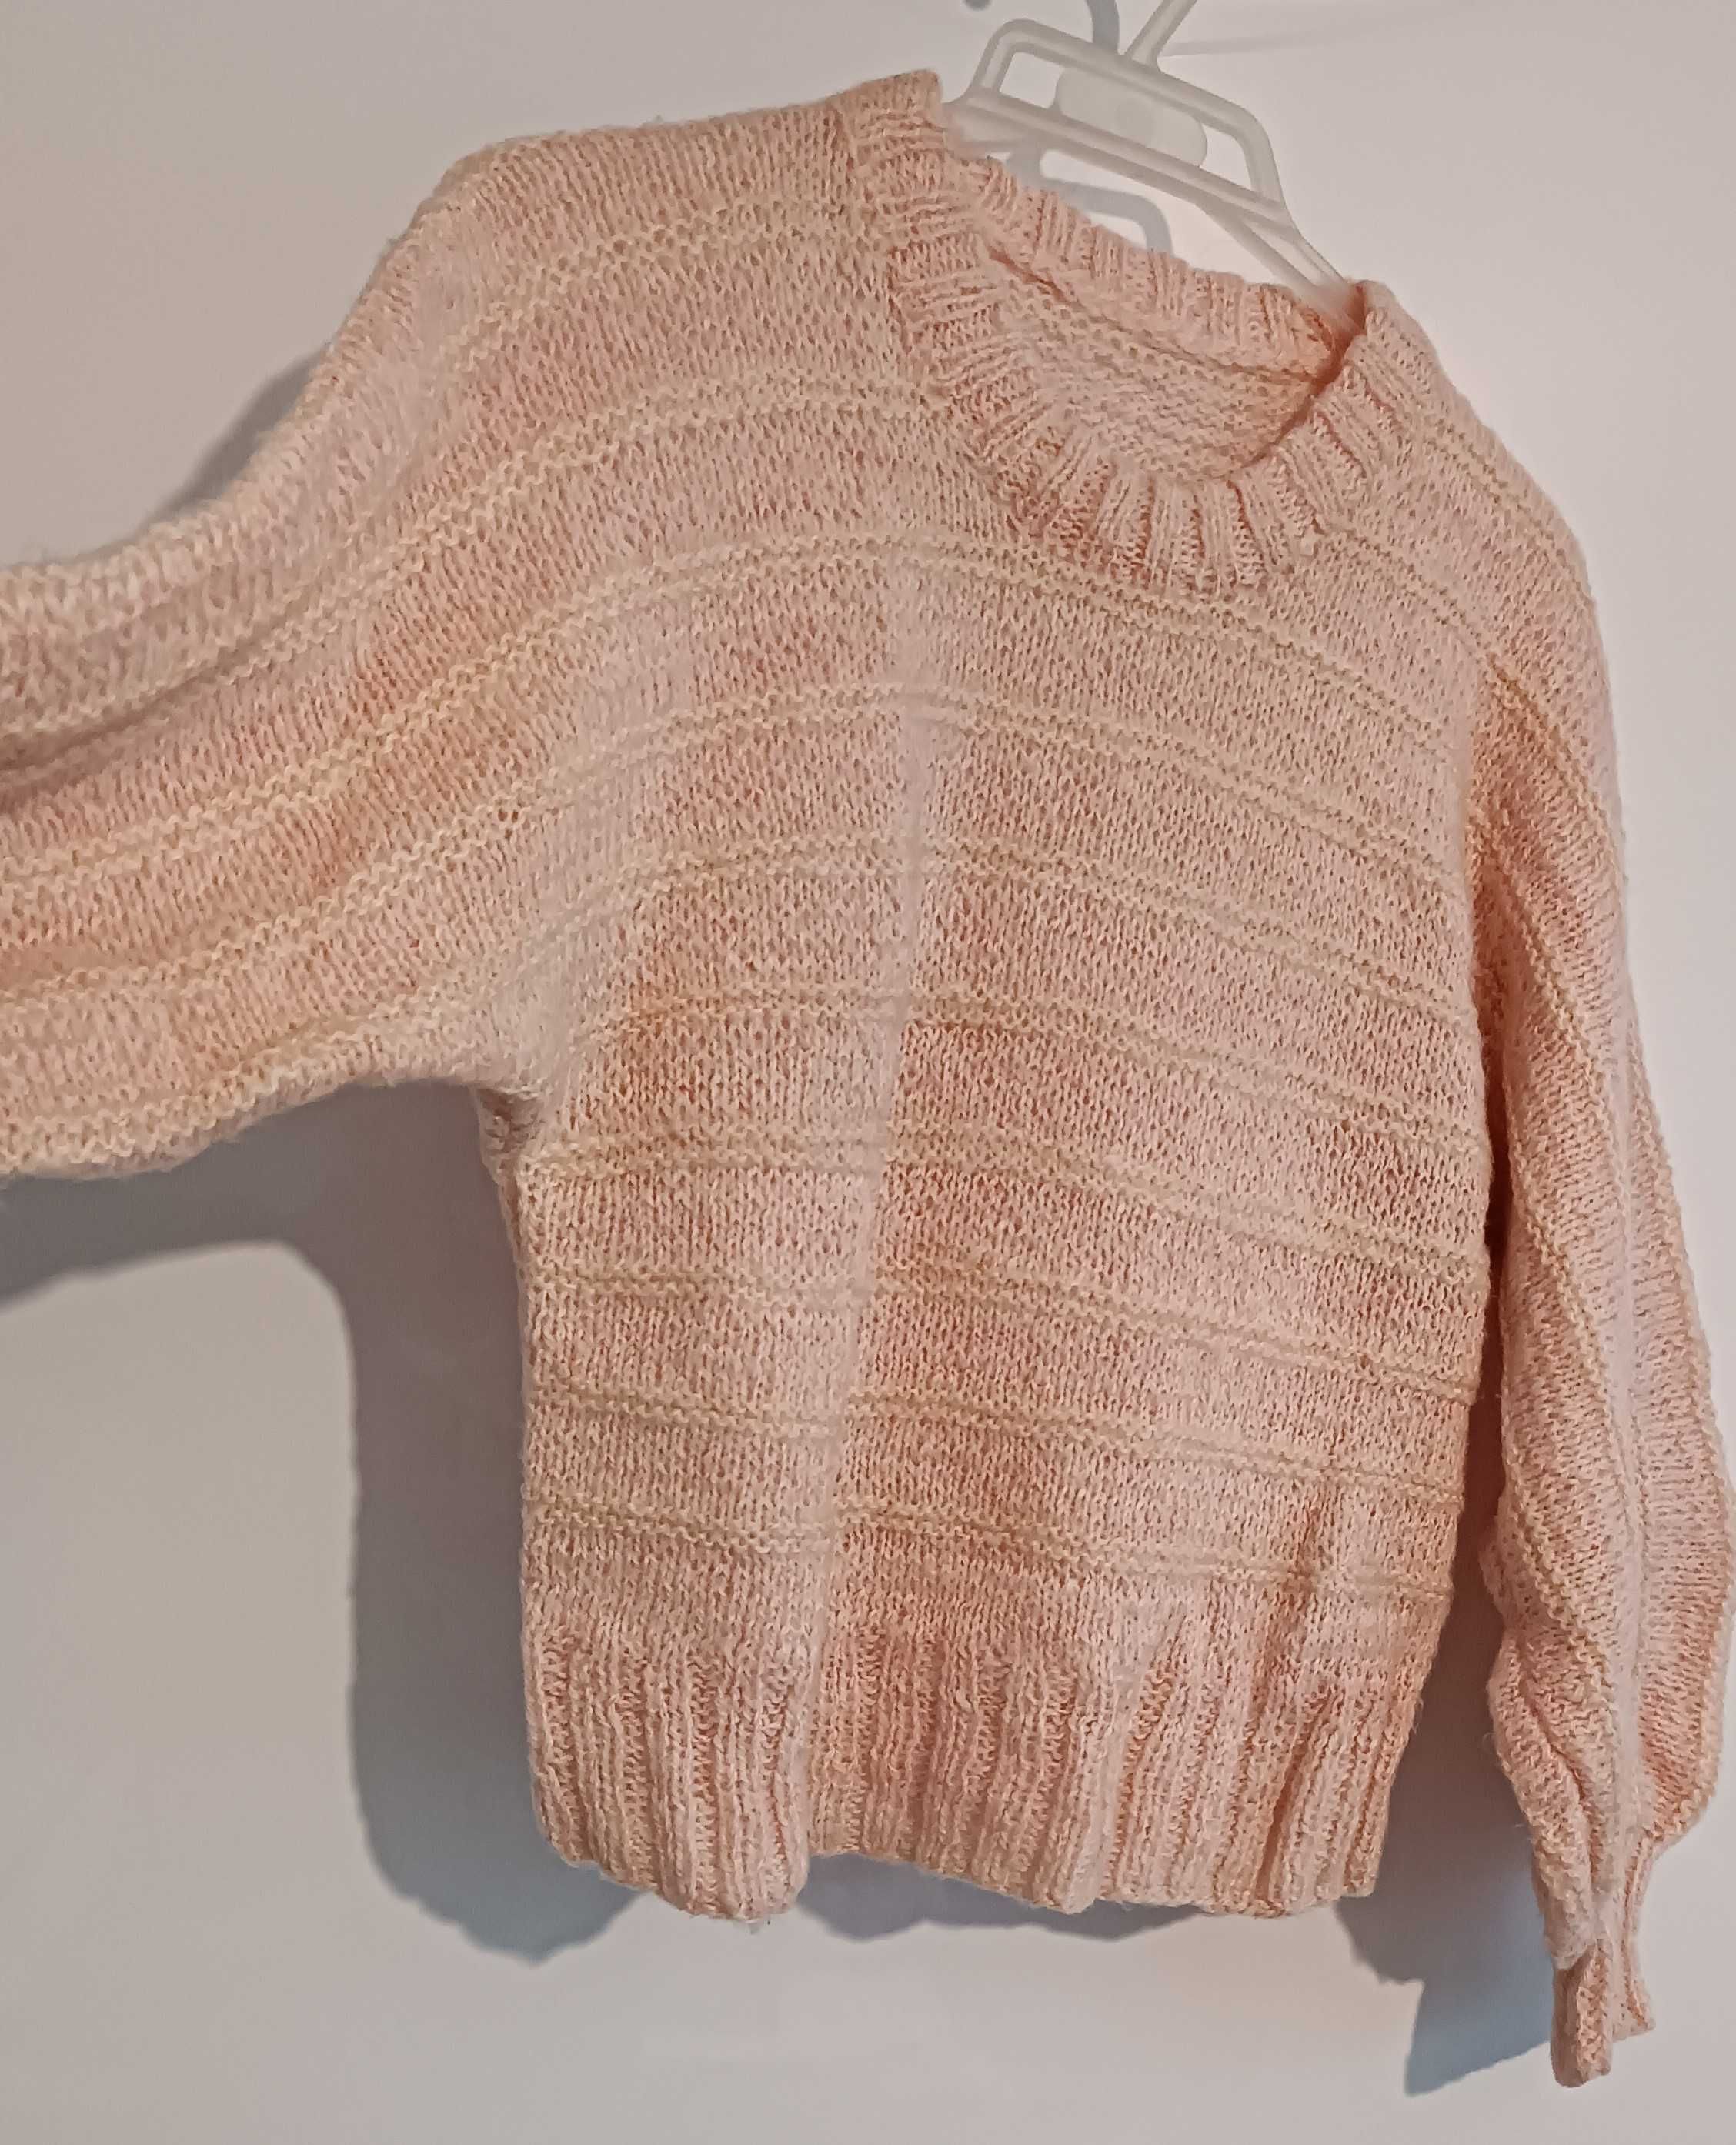 Kremowy krótki sweterek ręcznie robiony